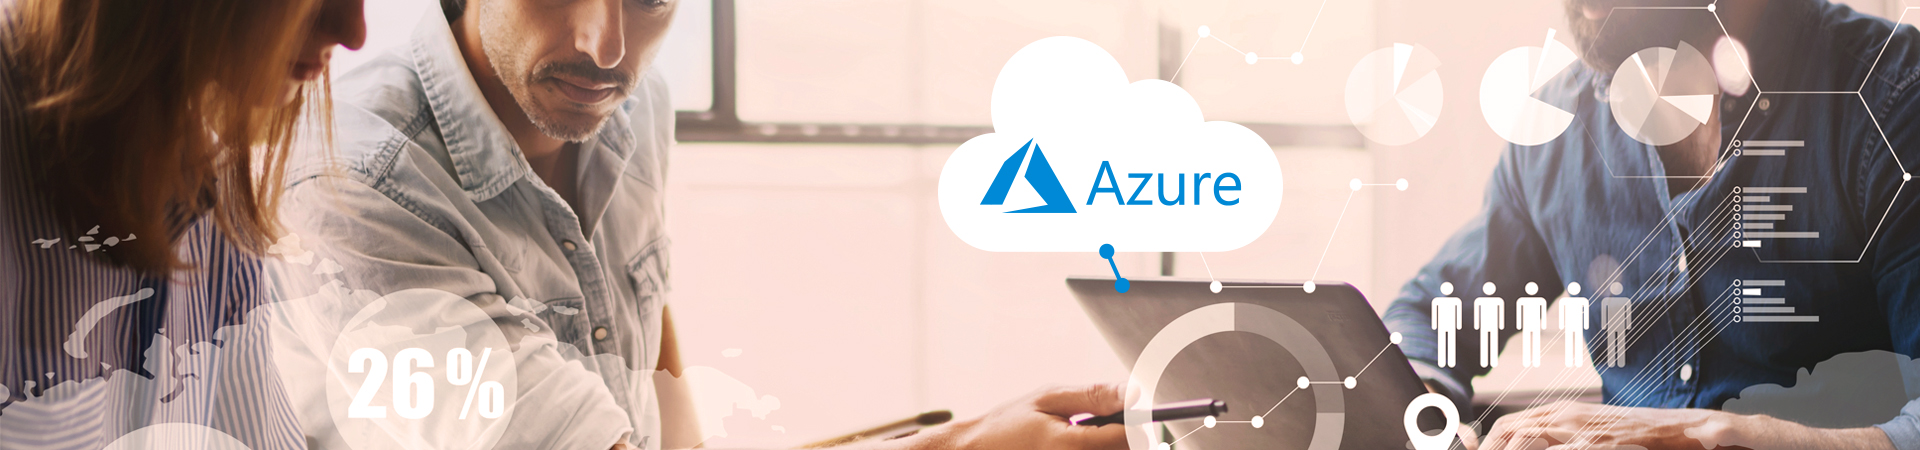 Entwicklung eines auf Azure basierten Softwareprodukts für das Management von vCIO-Diensten